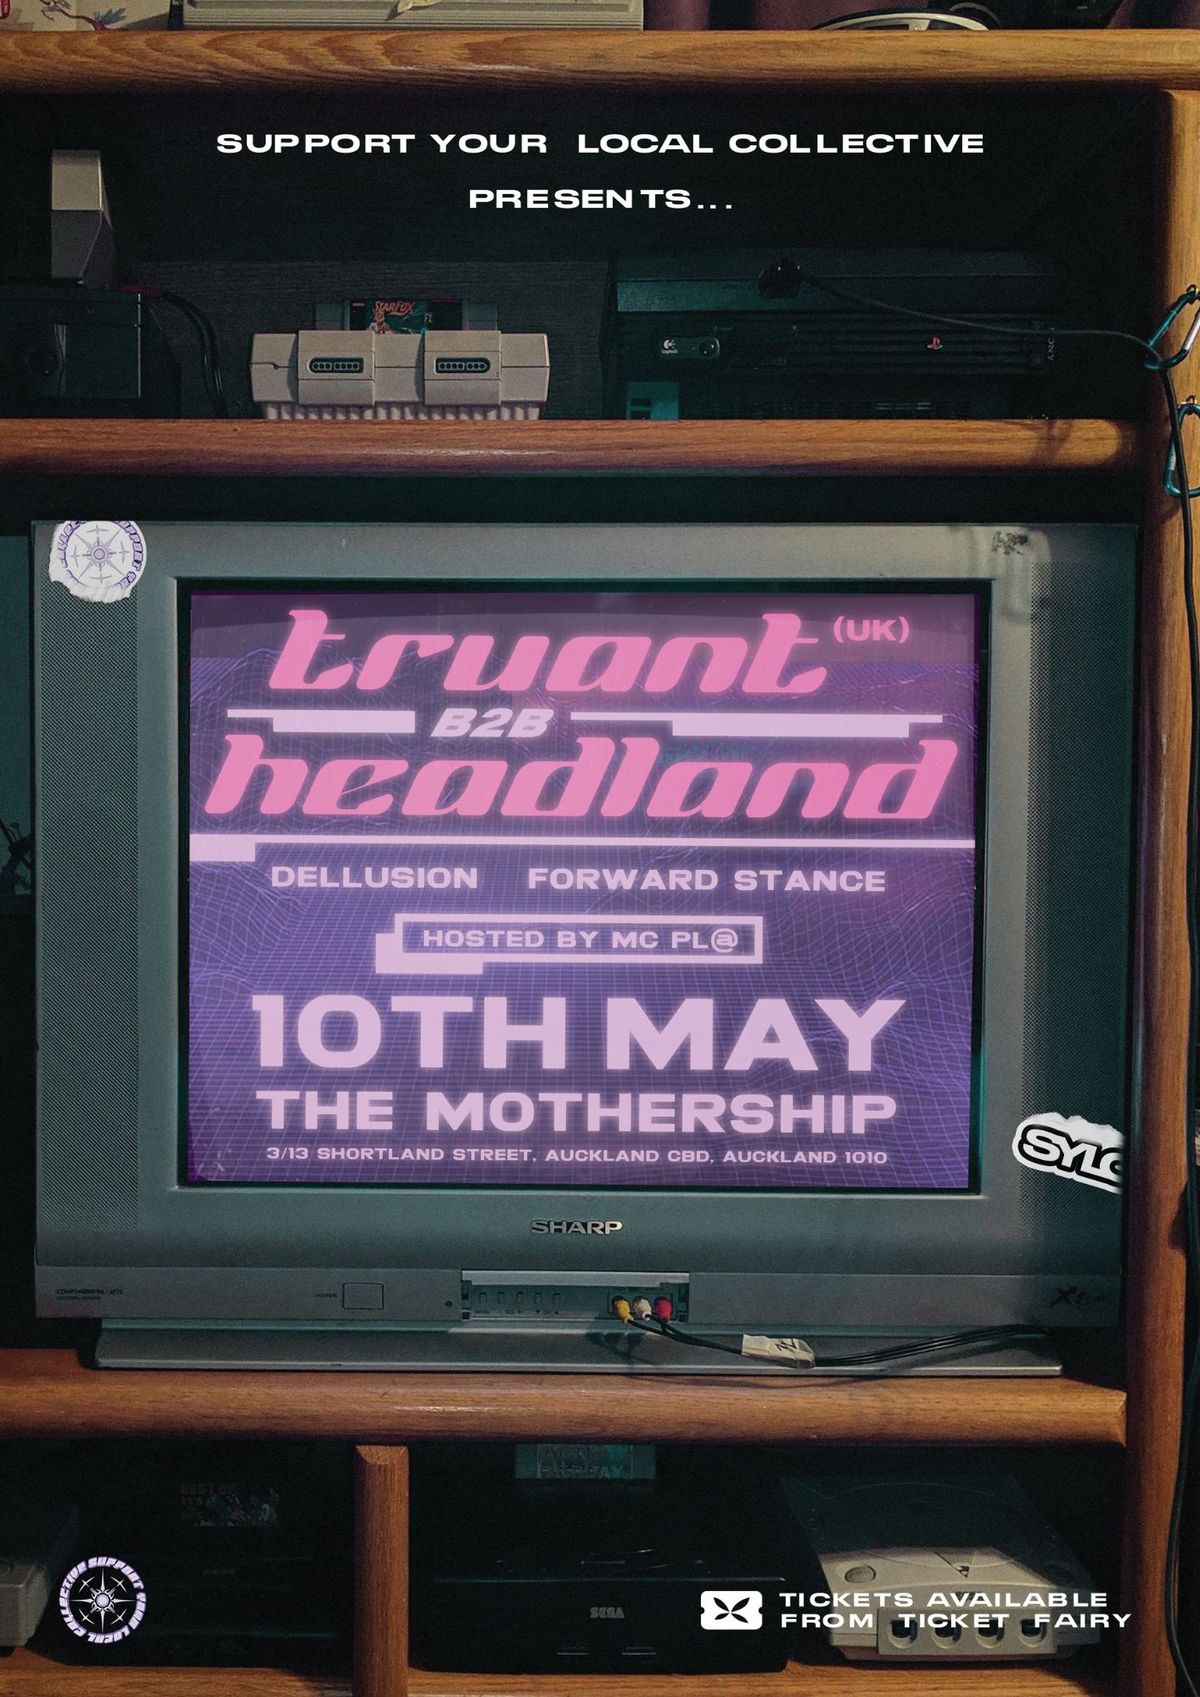 SYLC Presents Truant X Headland 